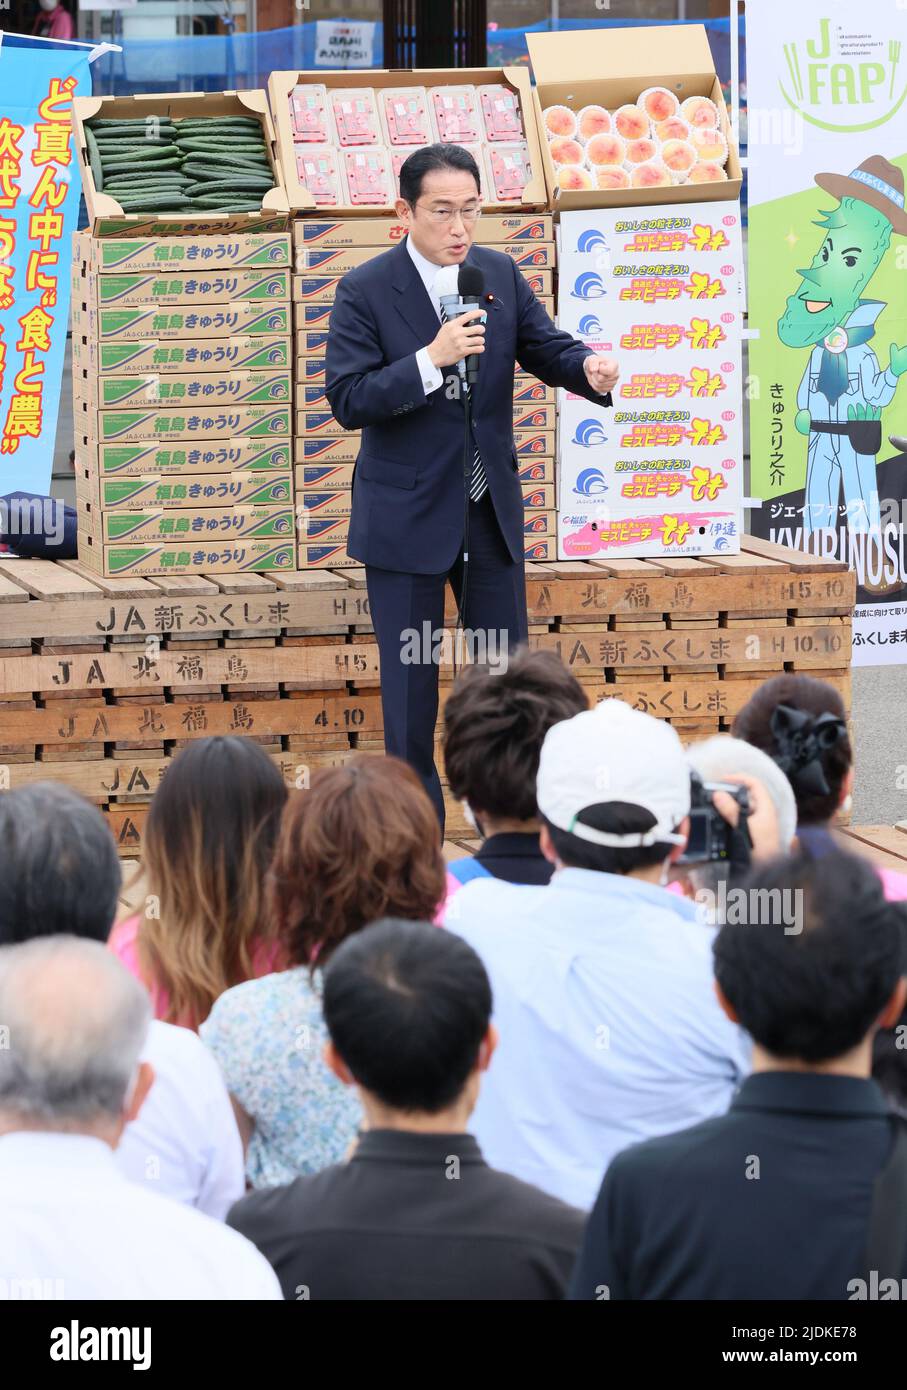 Fukushima, Japan. 22.. Juni 2022. Der japanische Premierminister und Präsident der regierenden Liberal-Demokratischen Partei (LDP) Fumio Kishida hält am Mittwoch, den 22. Juni 2022, eine Wahlkampfrede für seinen Parteikandidaten Hokuto Hoshi in einer Gemüseverkäufungsstelle in der nordjapanischen Stadt Fukushima, um die offizielle Kampagne für die Oberhauswahlen vom 10. Juli zu starten. Quelle: Yoshio Tsunoda/AFLO/Alamy Live News Stockfoto